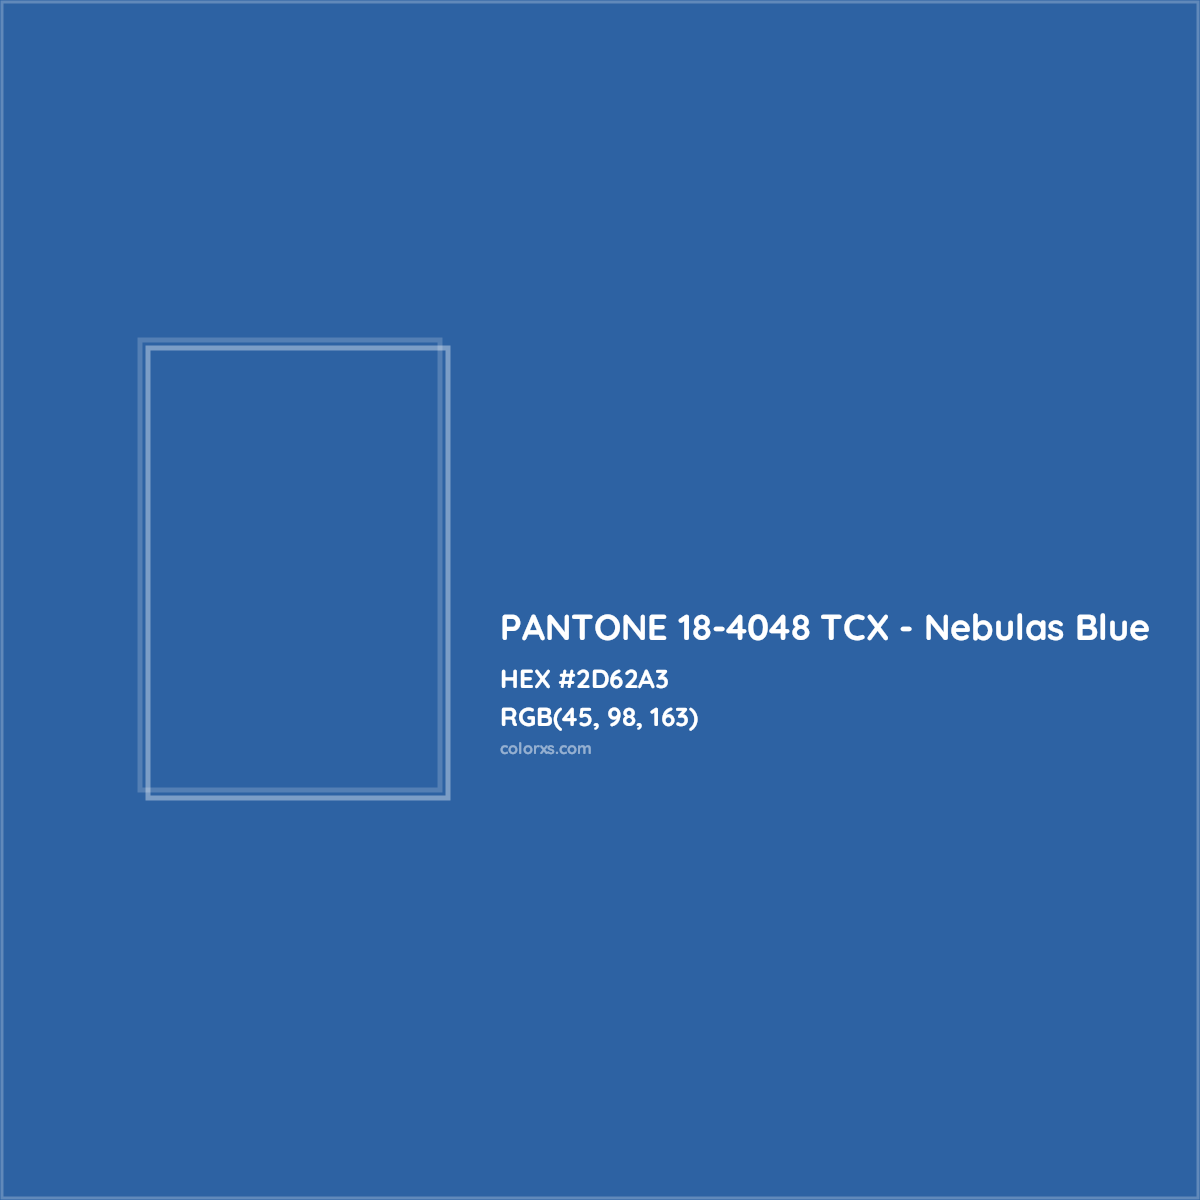 HEX #2D62A3 PANTONE 18-4048 TCX - Nebulas Blue CMS Pantone TCX - Color Code